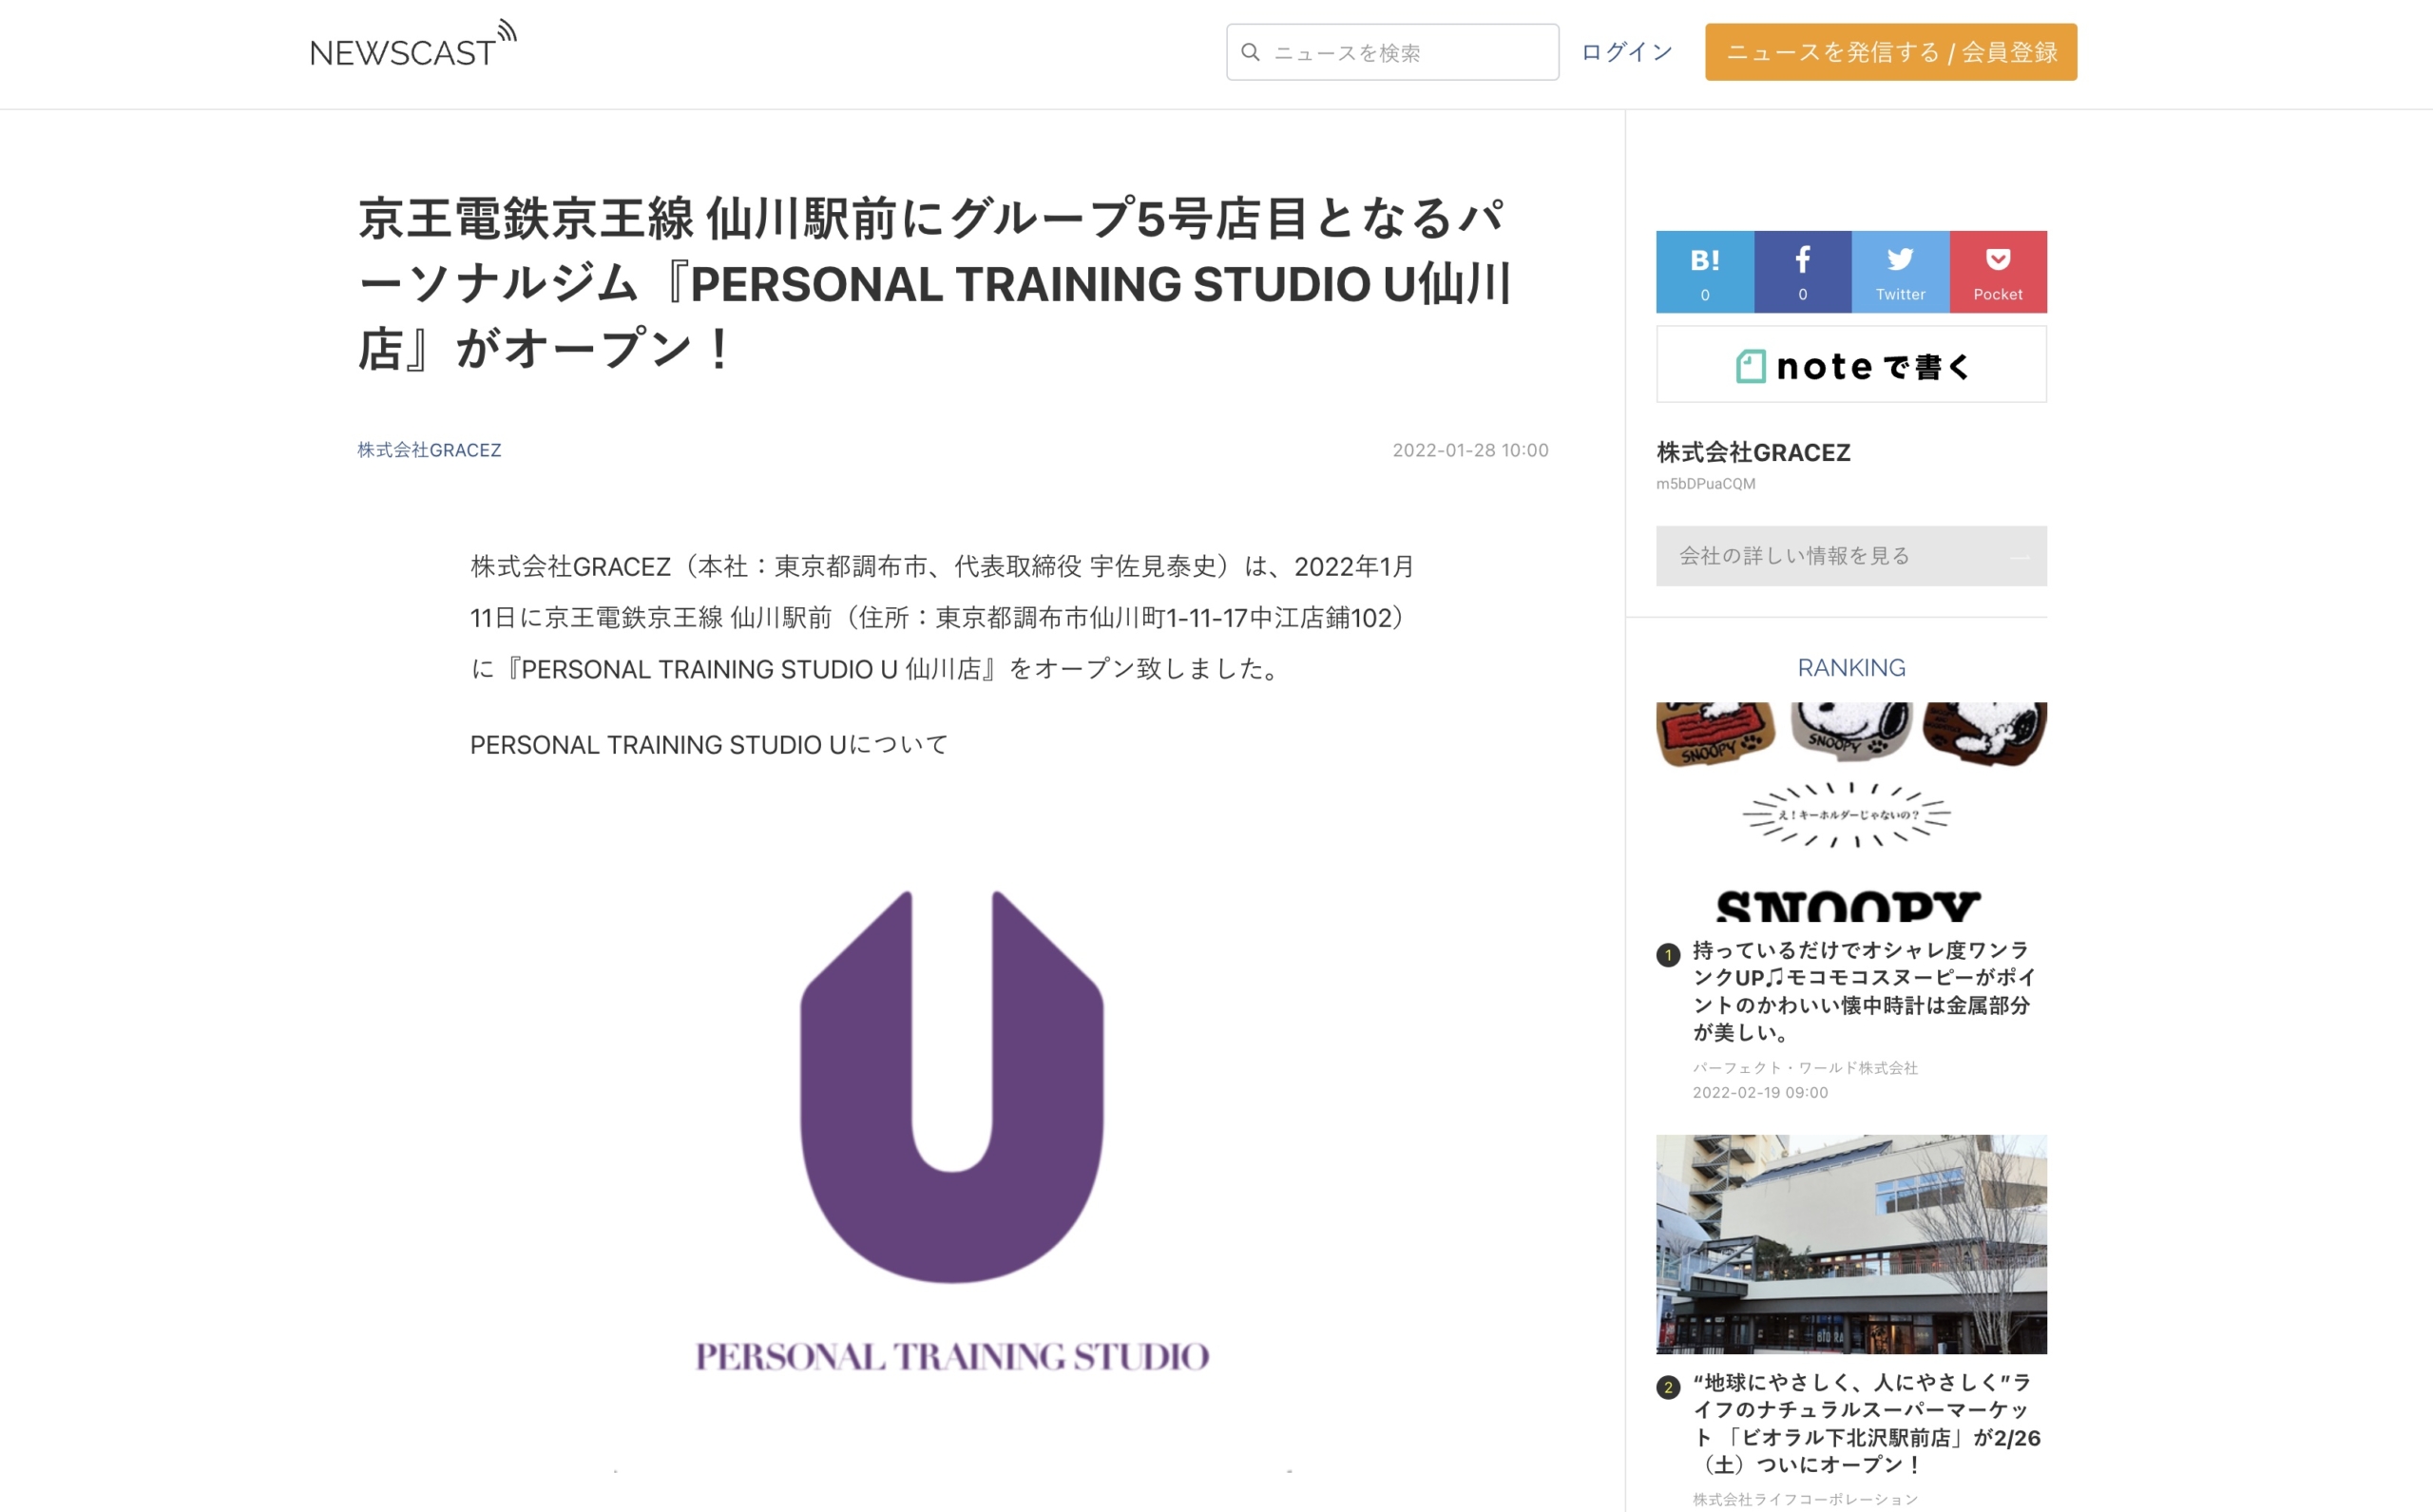 「NEWSCAST」にてPERSONAL TRAINING STUDIO U仙川店のプレスリリース配信